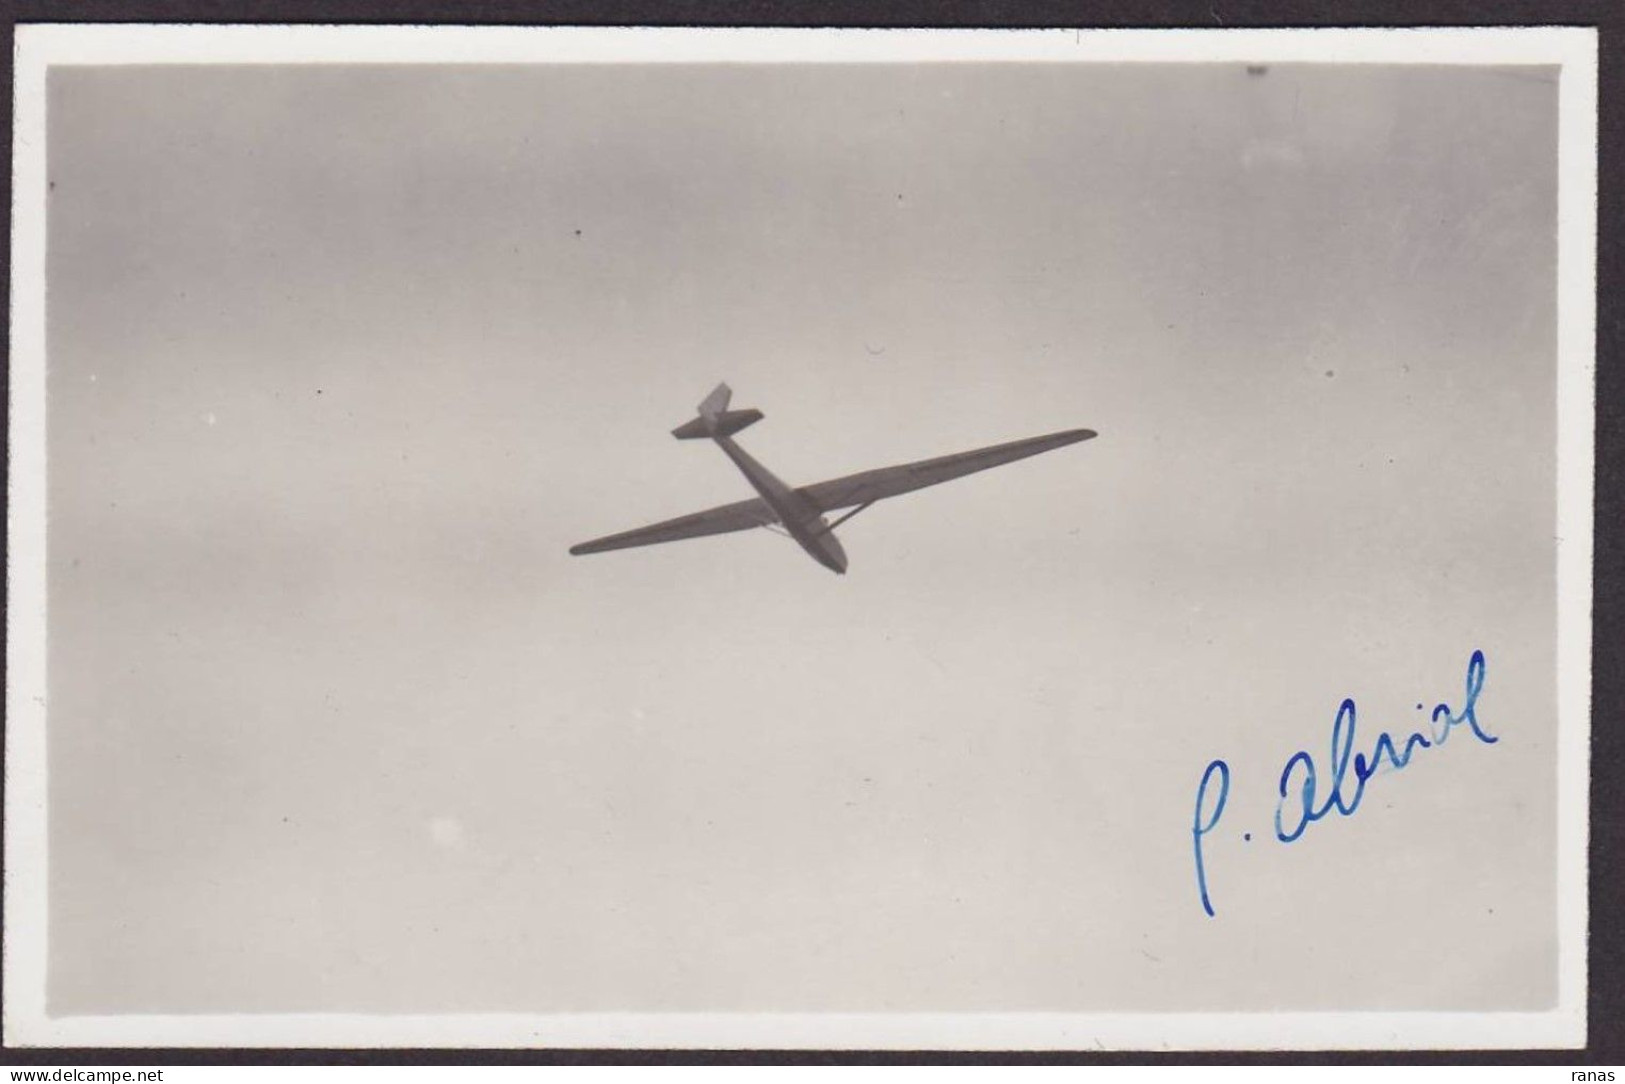 CPA Aviation Autographe Signature Aviateur Avion Carte Photo RPPC Non Circulé ABRIOL Vol à Voile Planeur - Aviators & Astronauts